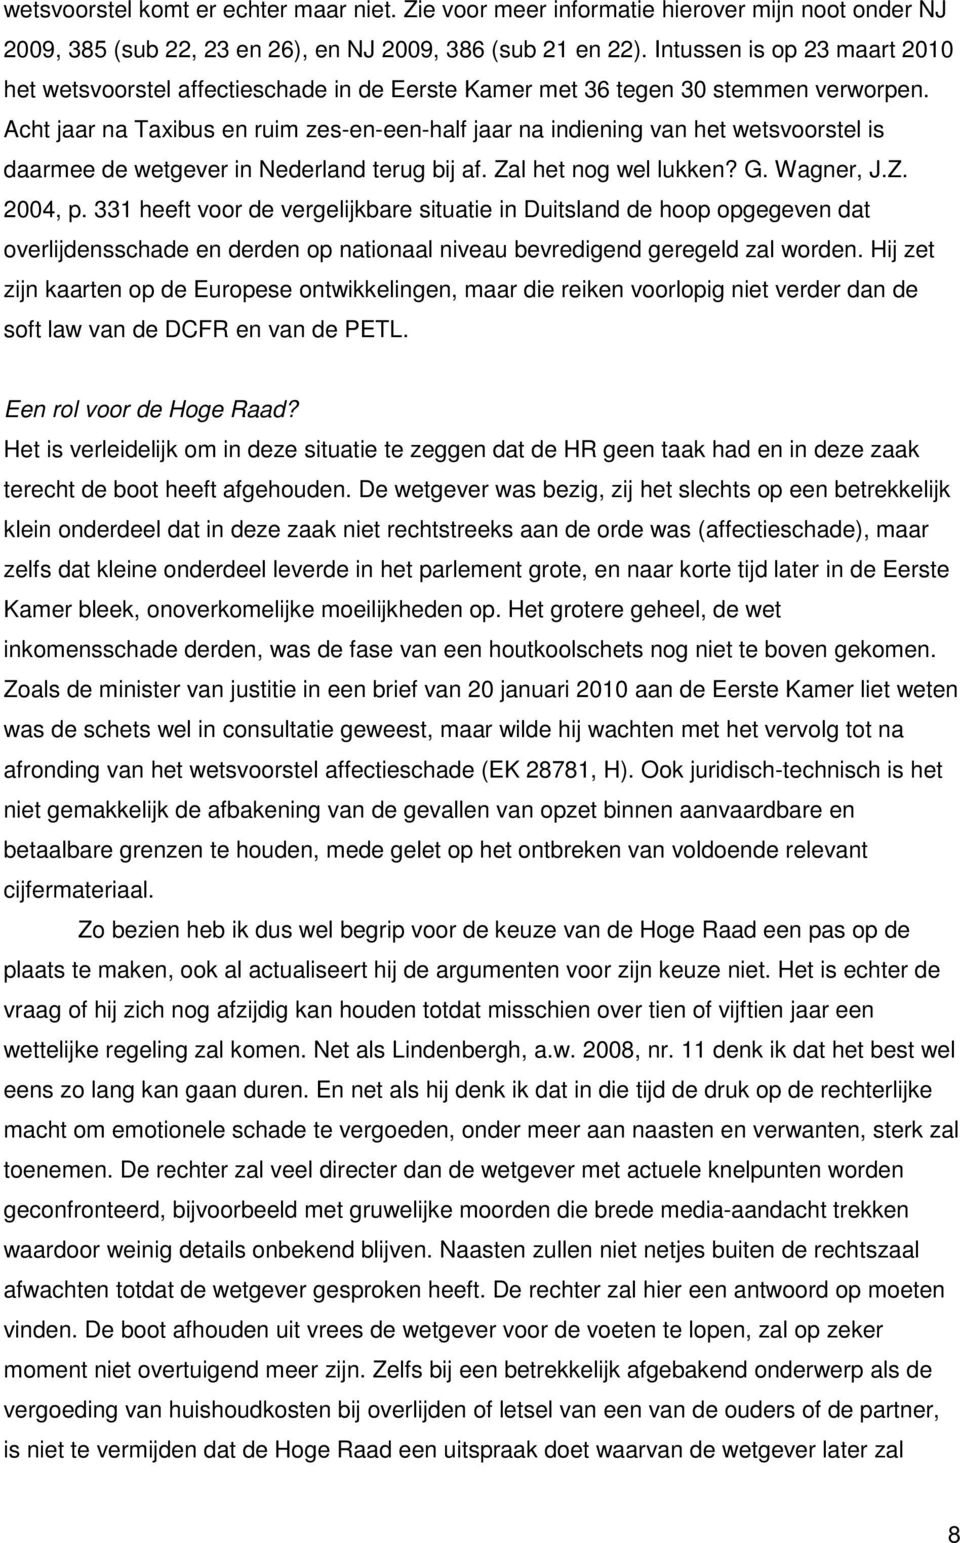 Acht jaar na Taxibus en ruim zes-en-een-half jaar na indiening van het wetsvoorstel is daarmee de wetgever in Nederland terug bij af. Zal het nog wel lukken? G. Wagner, J.Z. 2004, p.